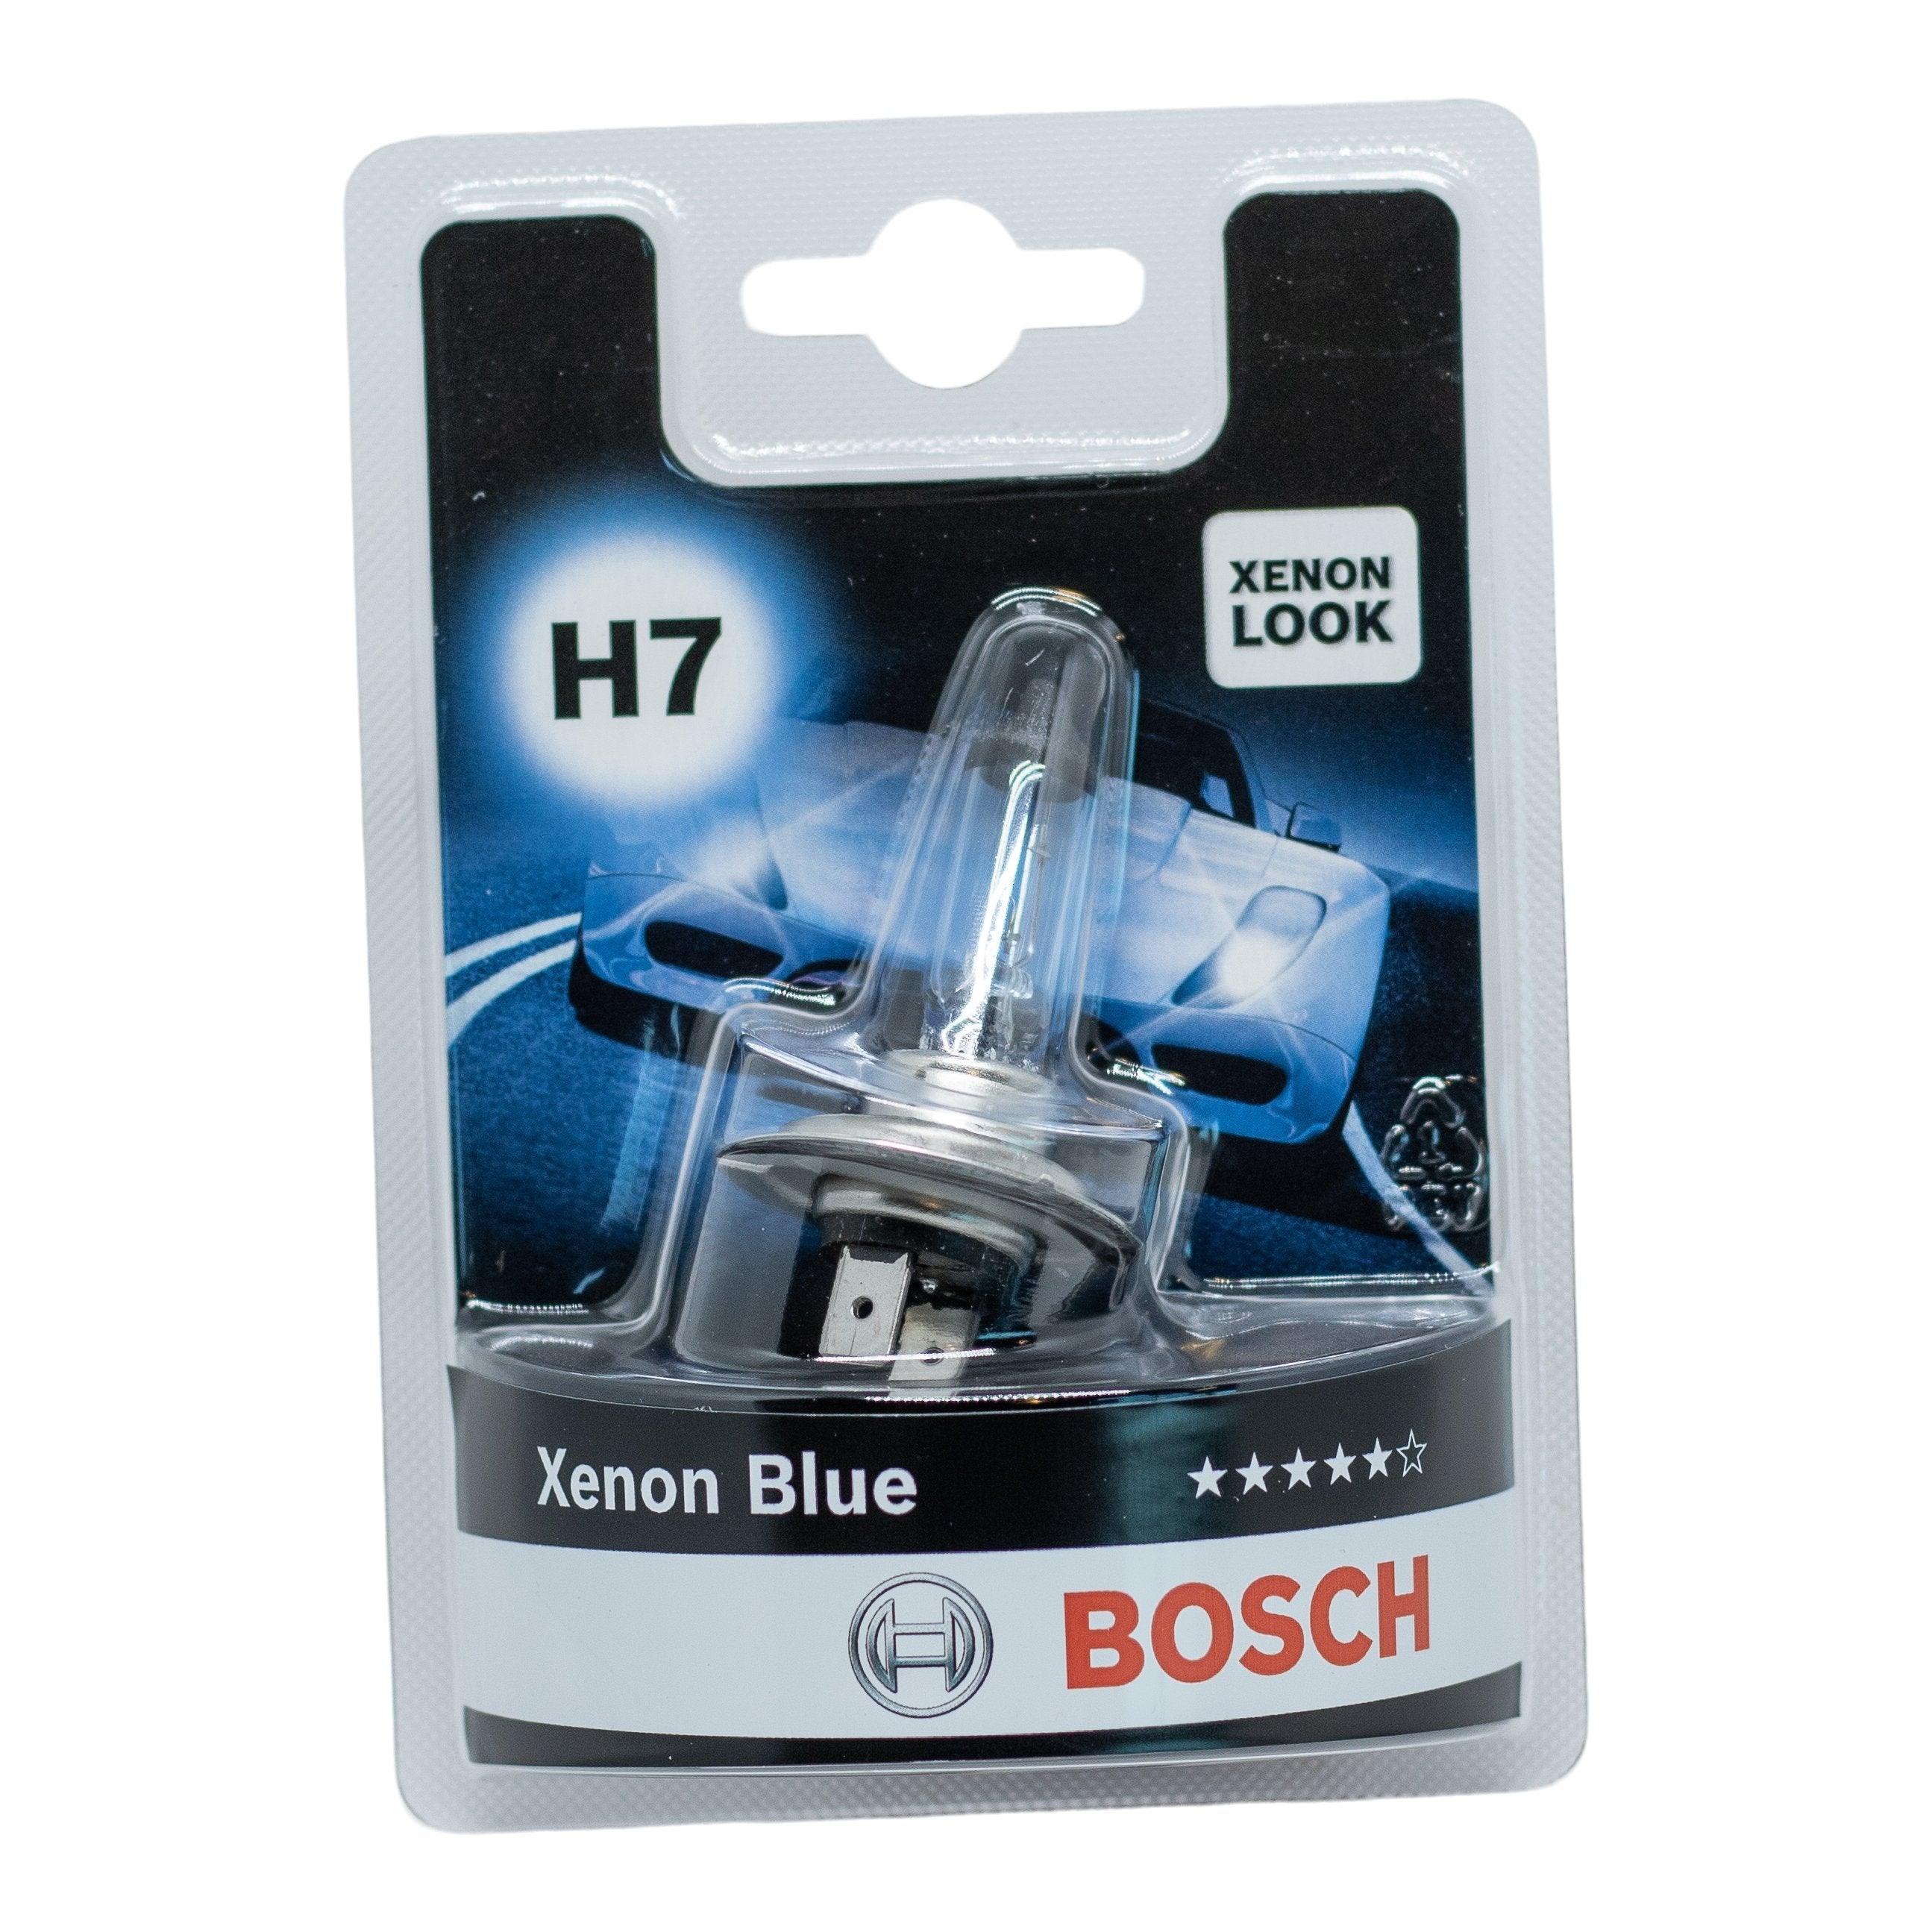 Billede af Bosch Xenon Blue H7 hos XpertCleaning.dk